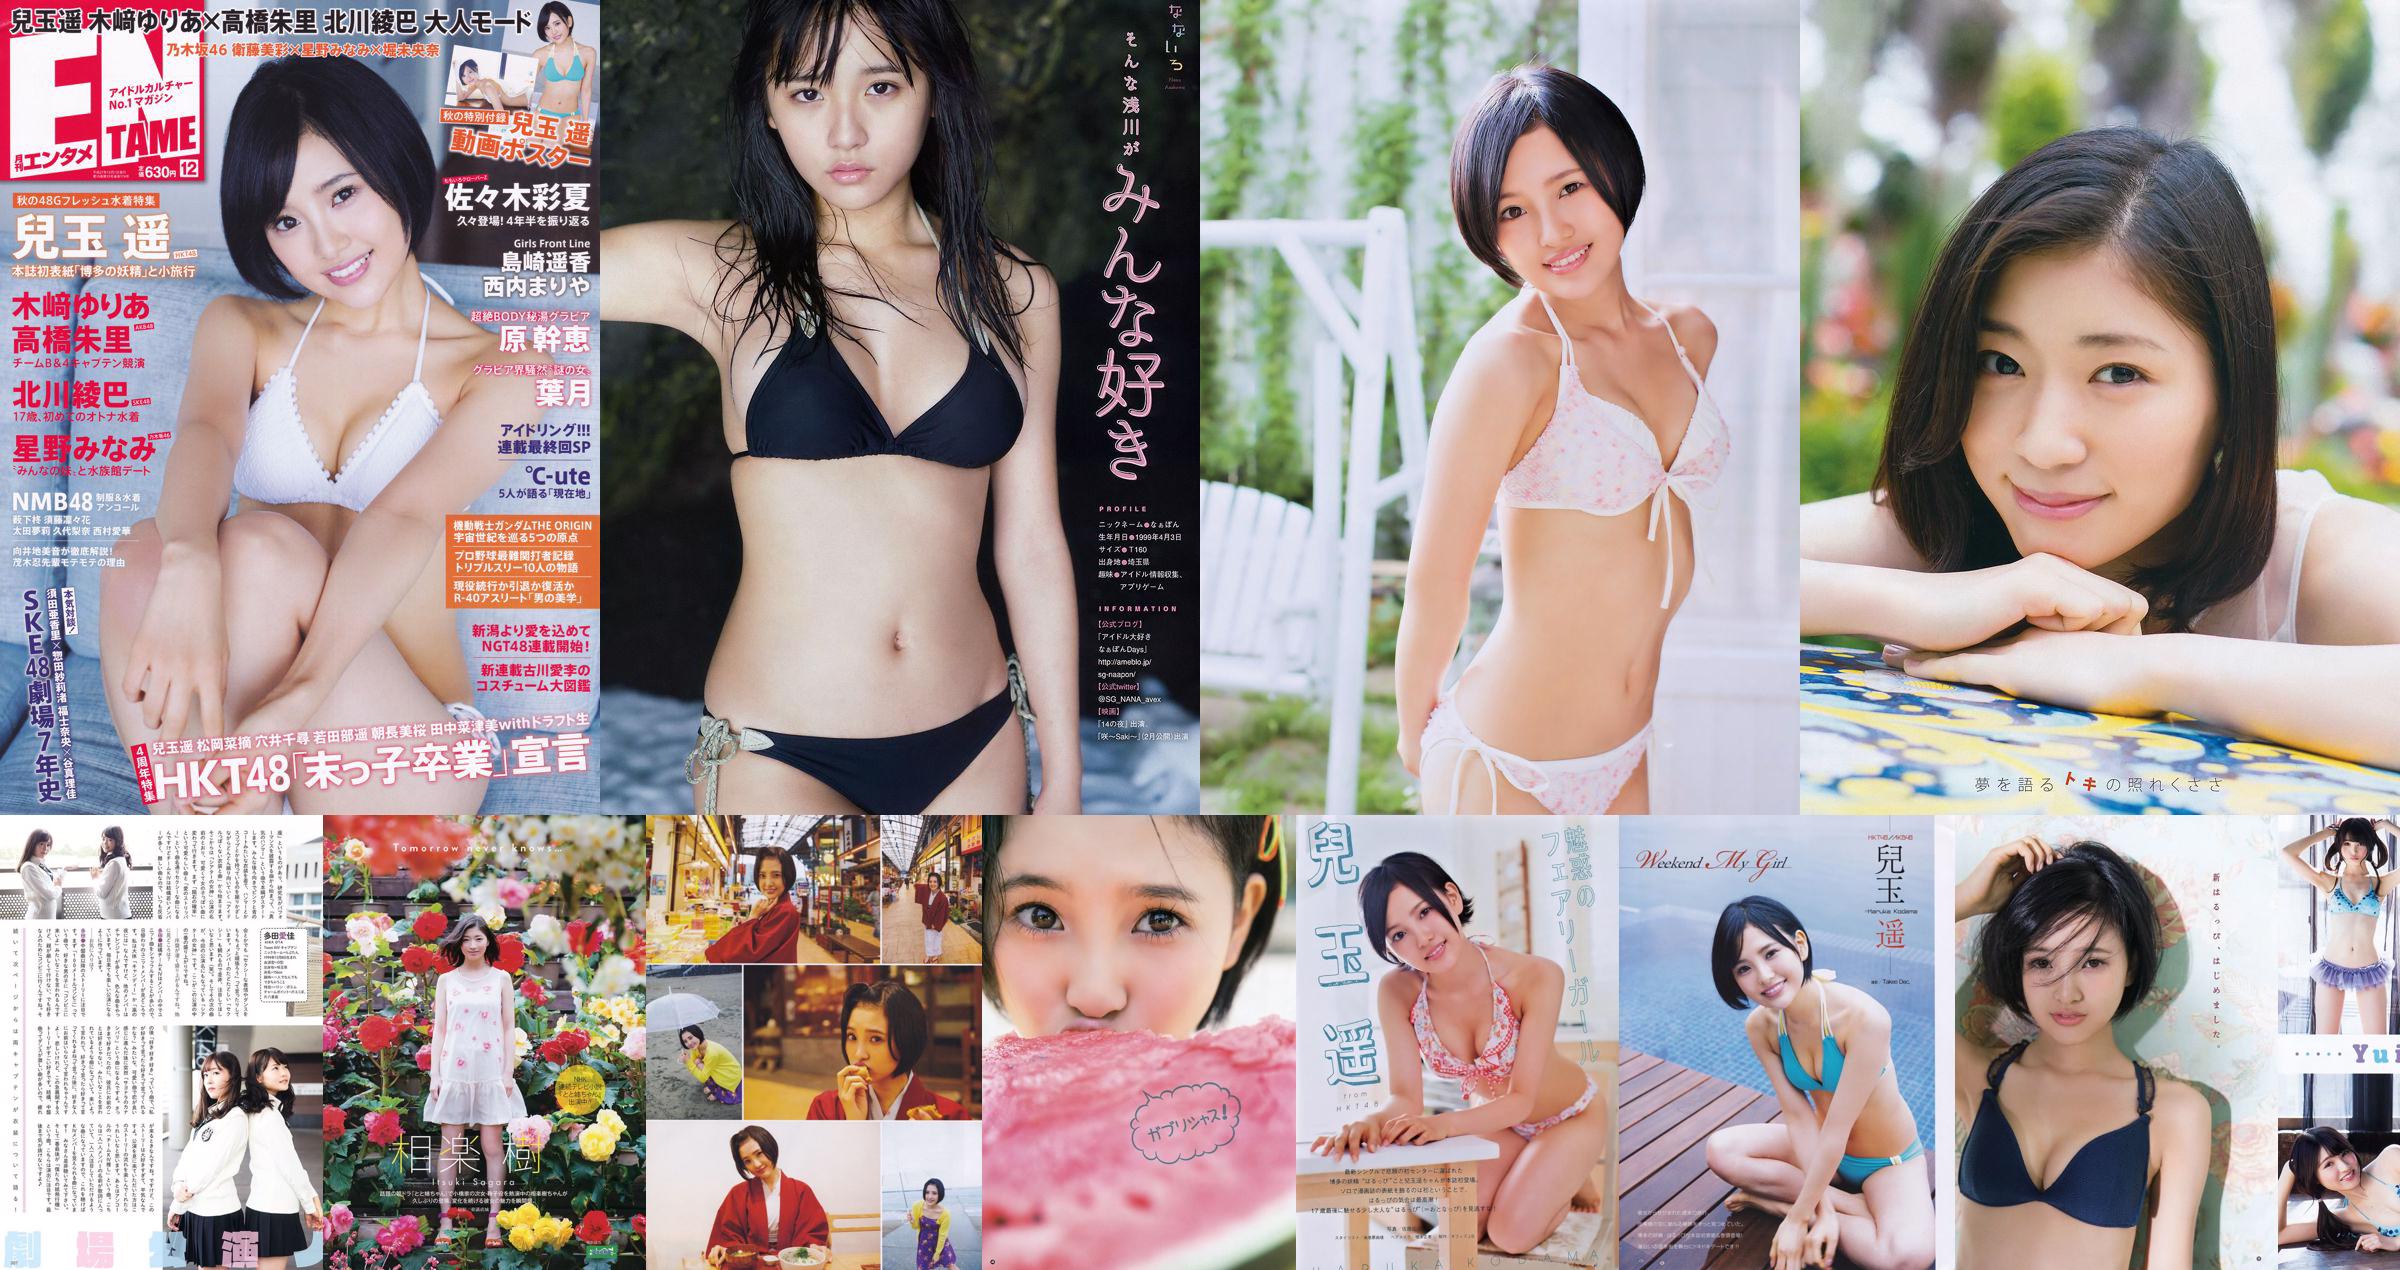 [Young Gangan] Haruka Kodama Itsuki Sagara 2016 No.11 Photo Magazine No.edb008 Page 1